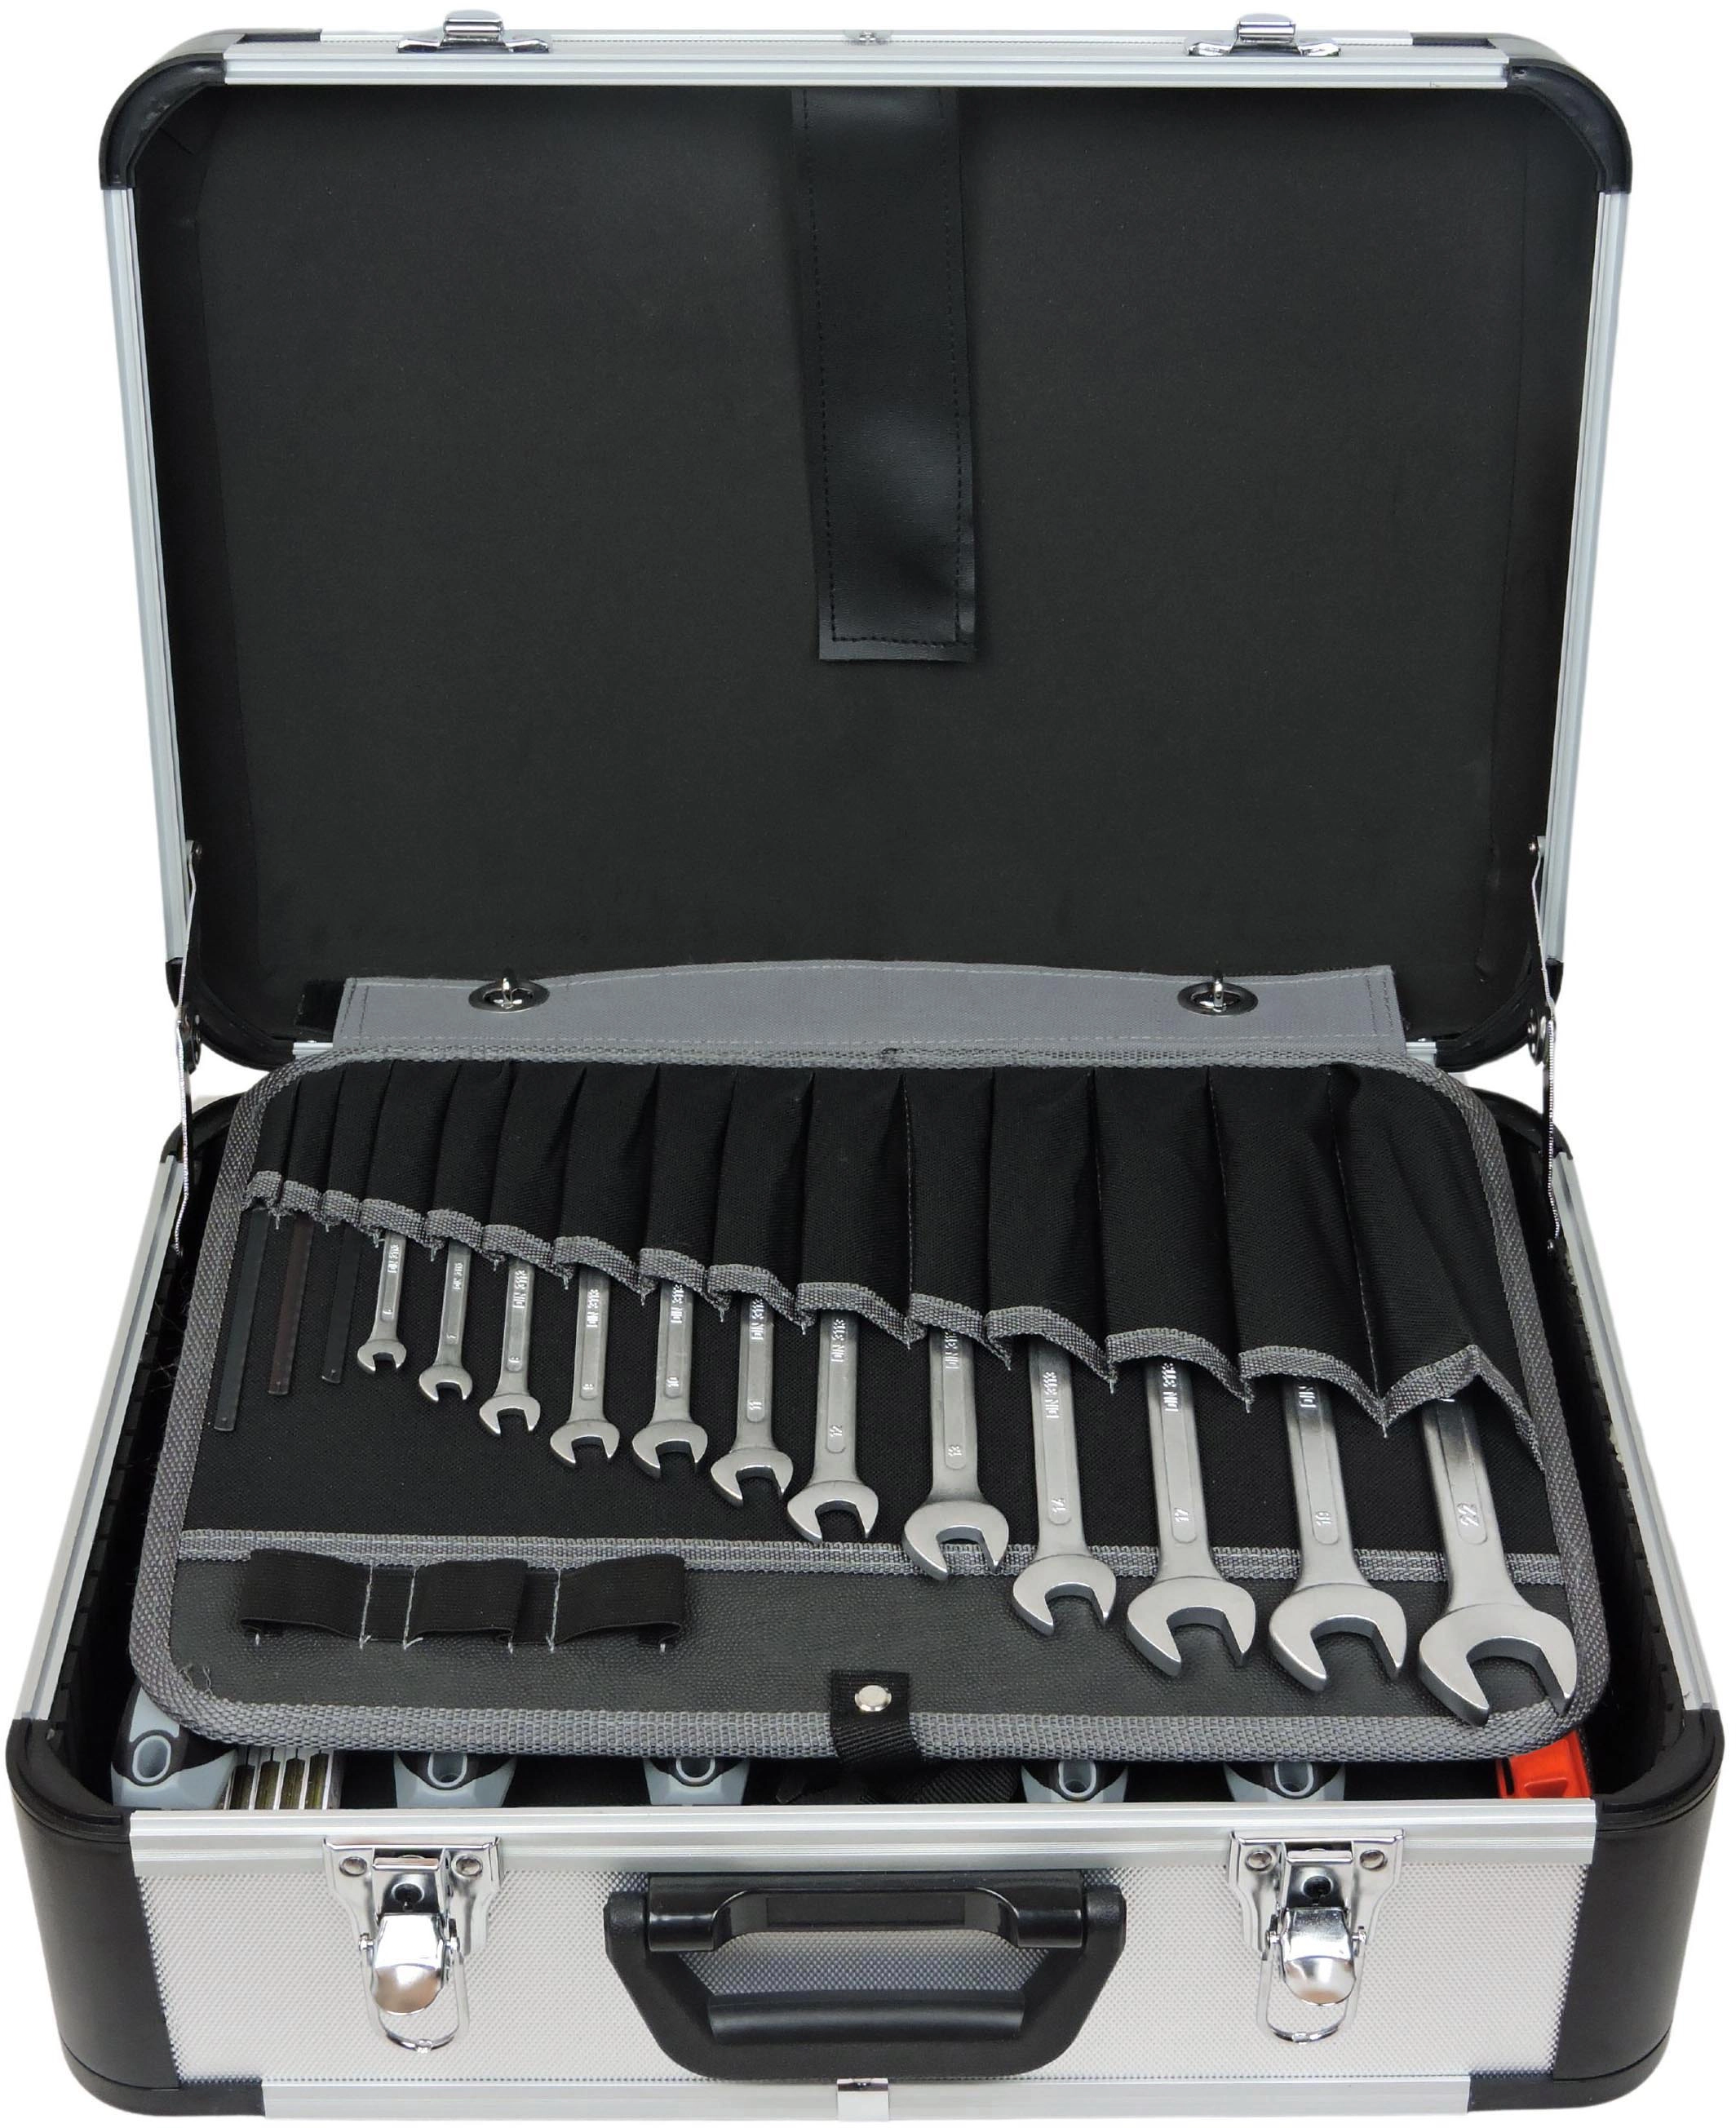 Famex Alu Werkzeugkoffer 429-88 gefüllt bei Werkzeug kaufen OBI mit